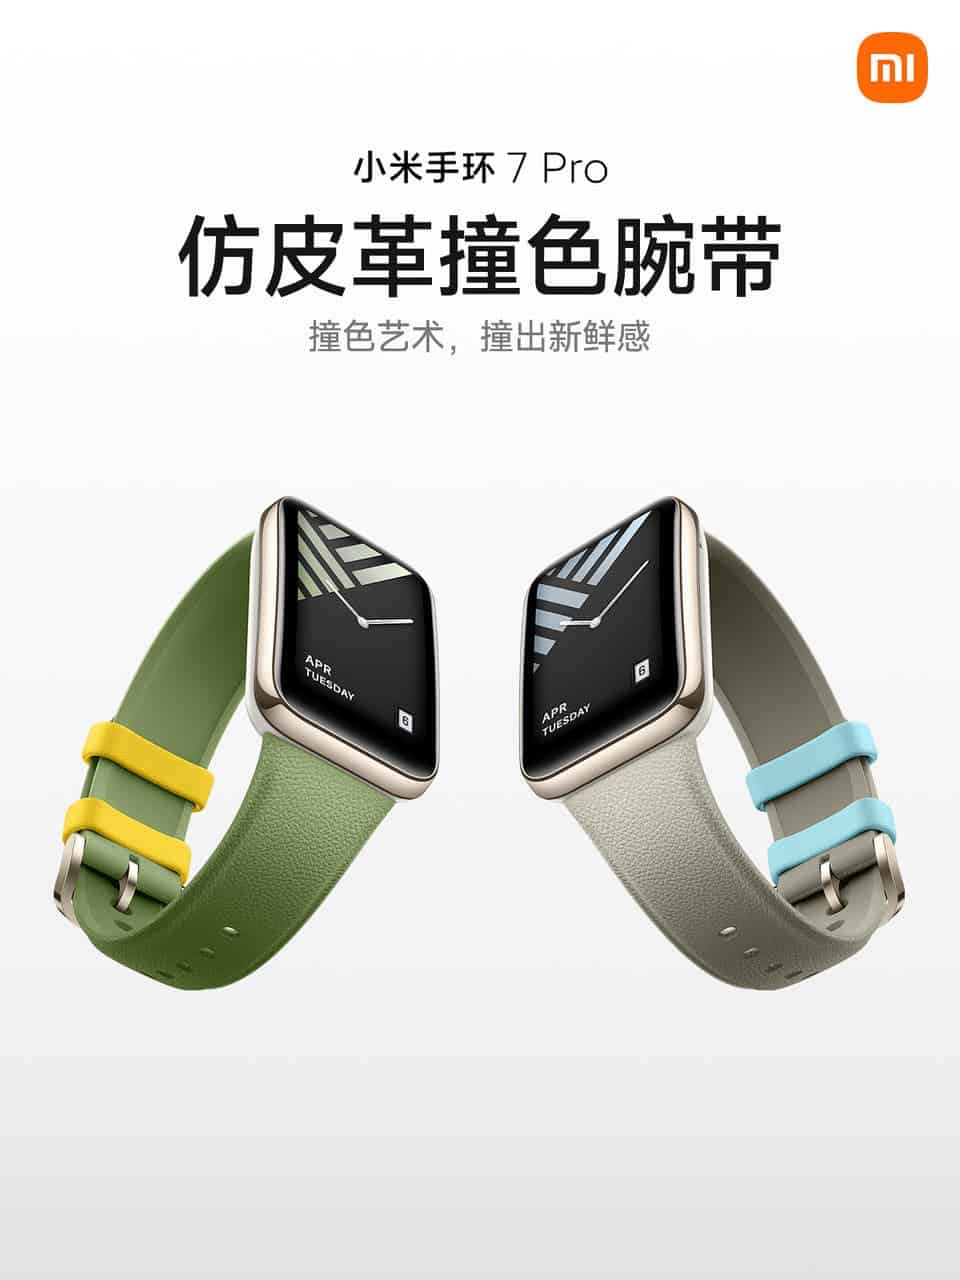 Xiaomi Mi Band 7 Pro colors